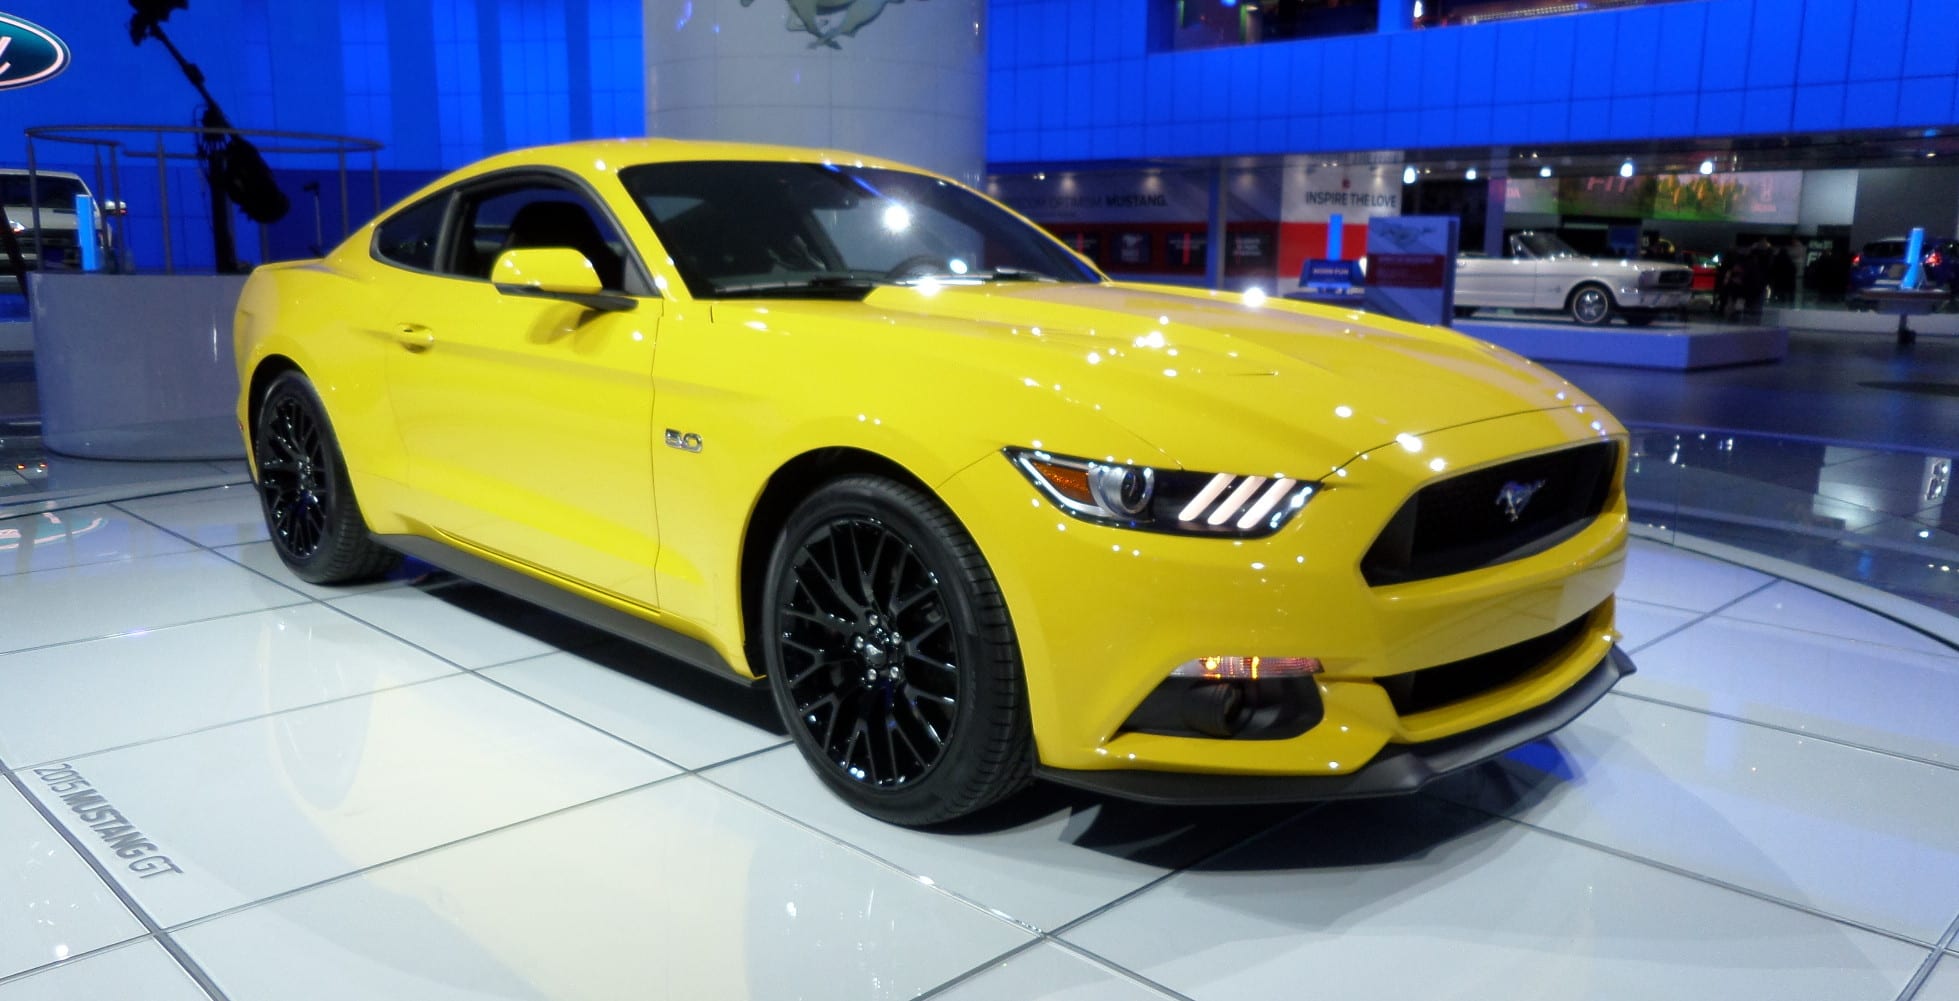 A yellow 2015 Ford Mustang sports car at the NAIAS.